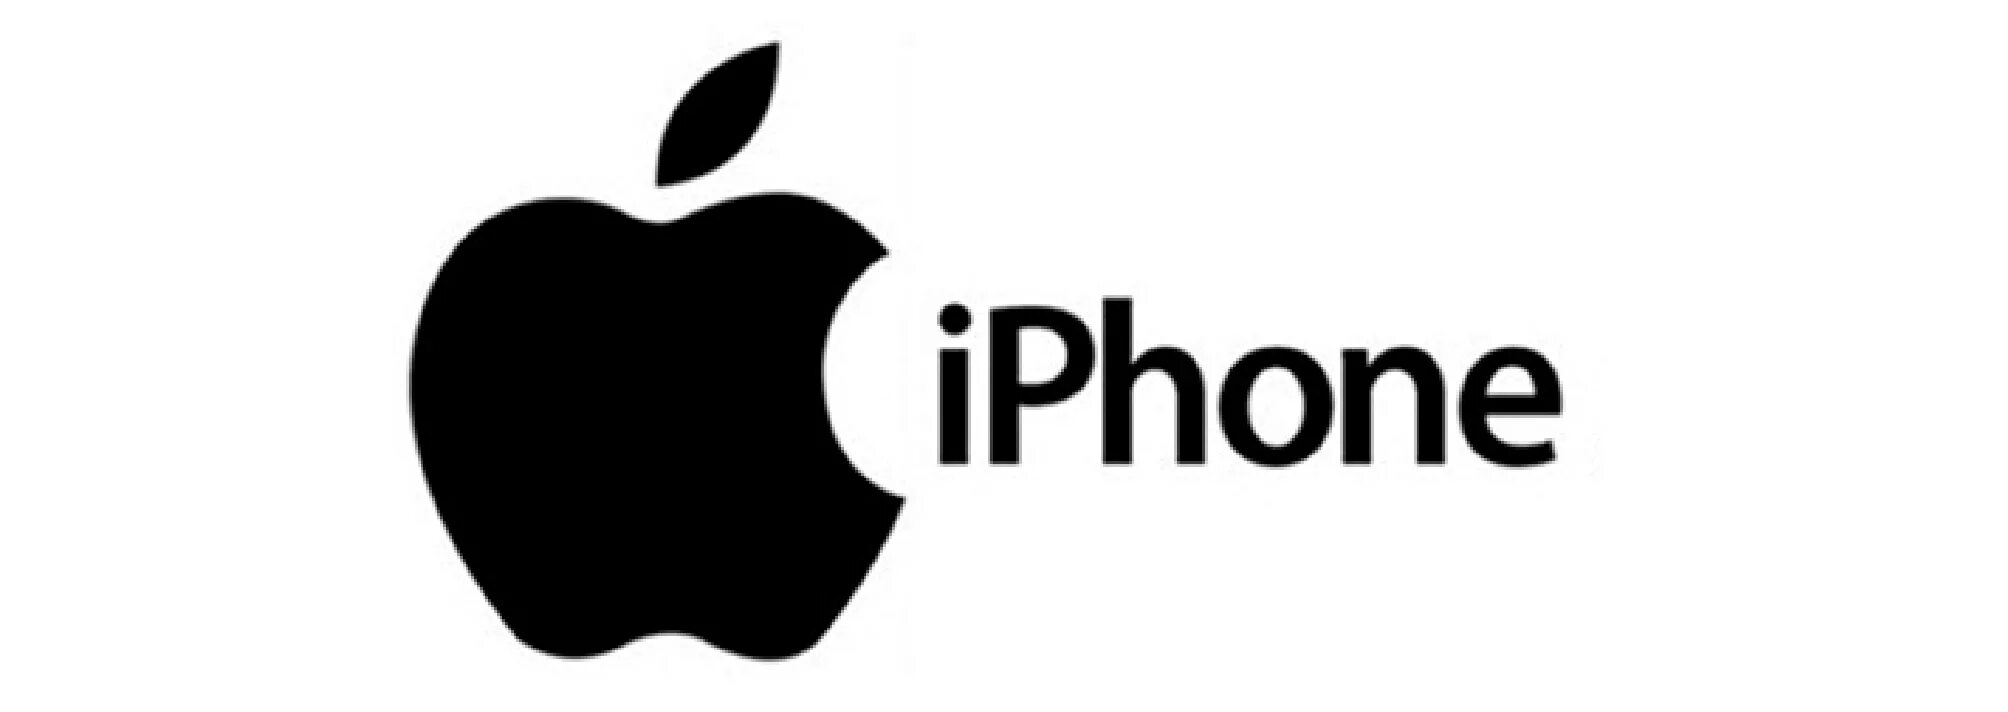 Создание логотип на айфоне. Эмблема айфона. Надпись айфон. Торговая марка Apple. Товарный знак айфон.